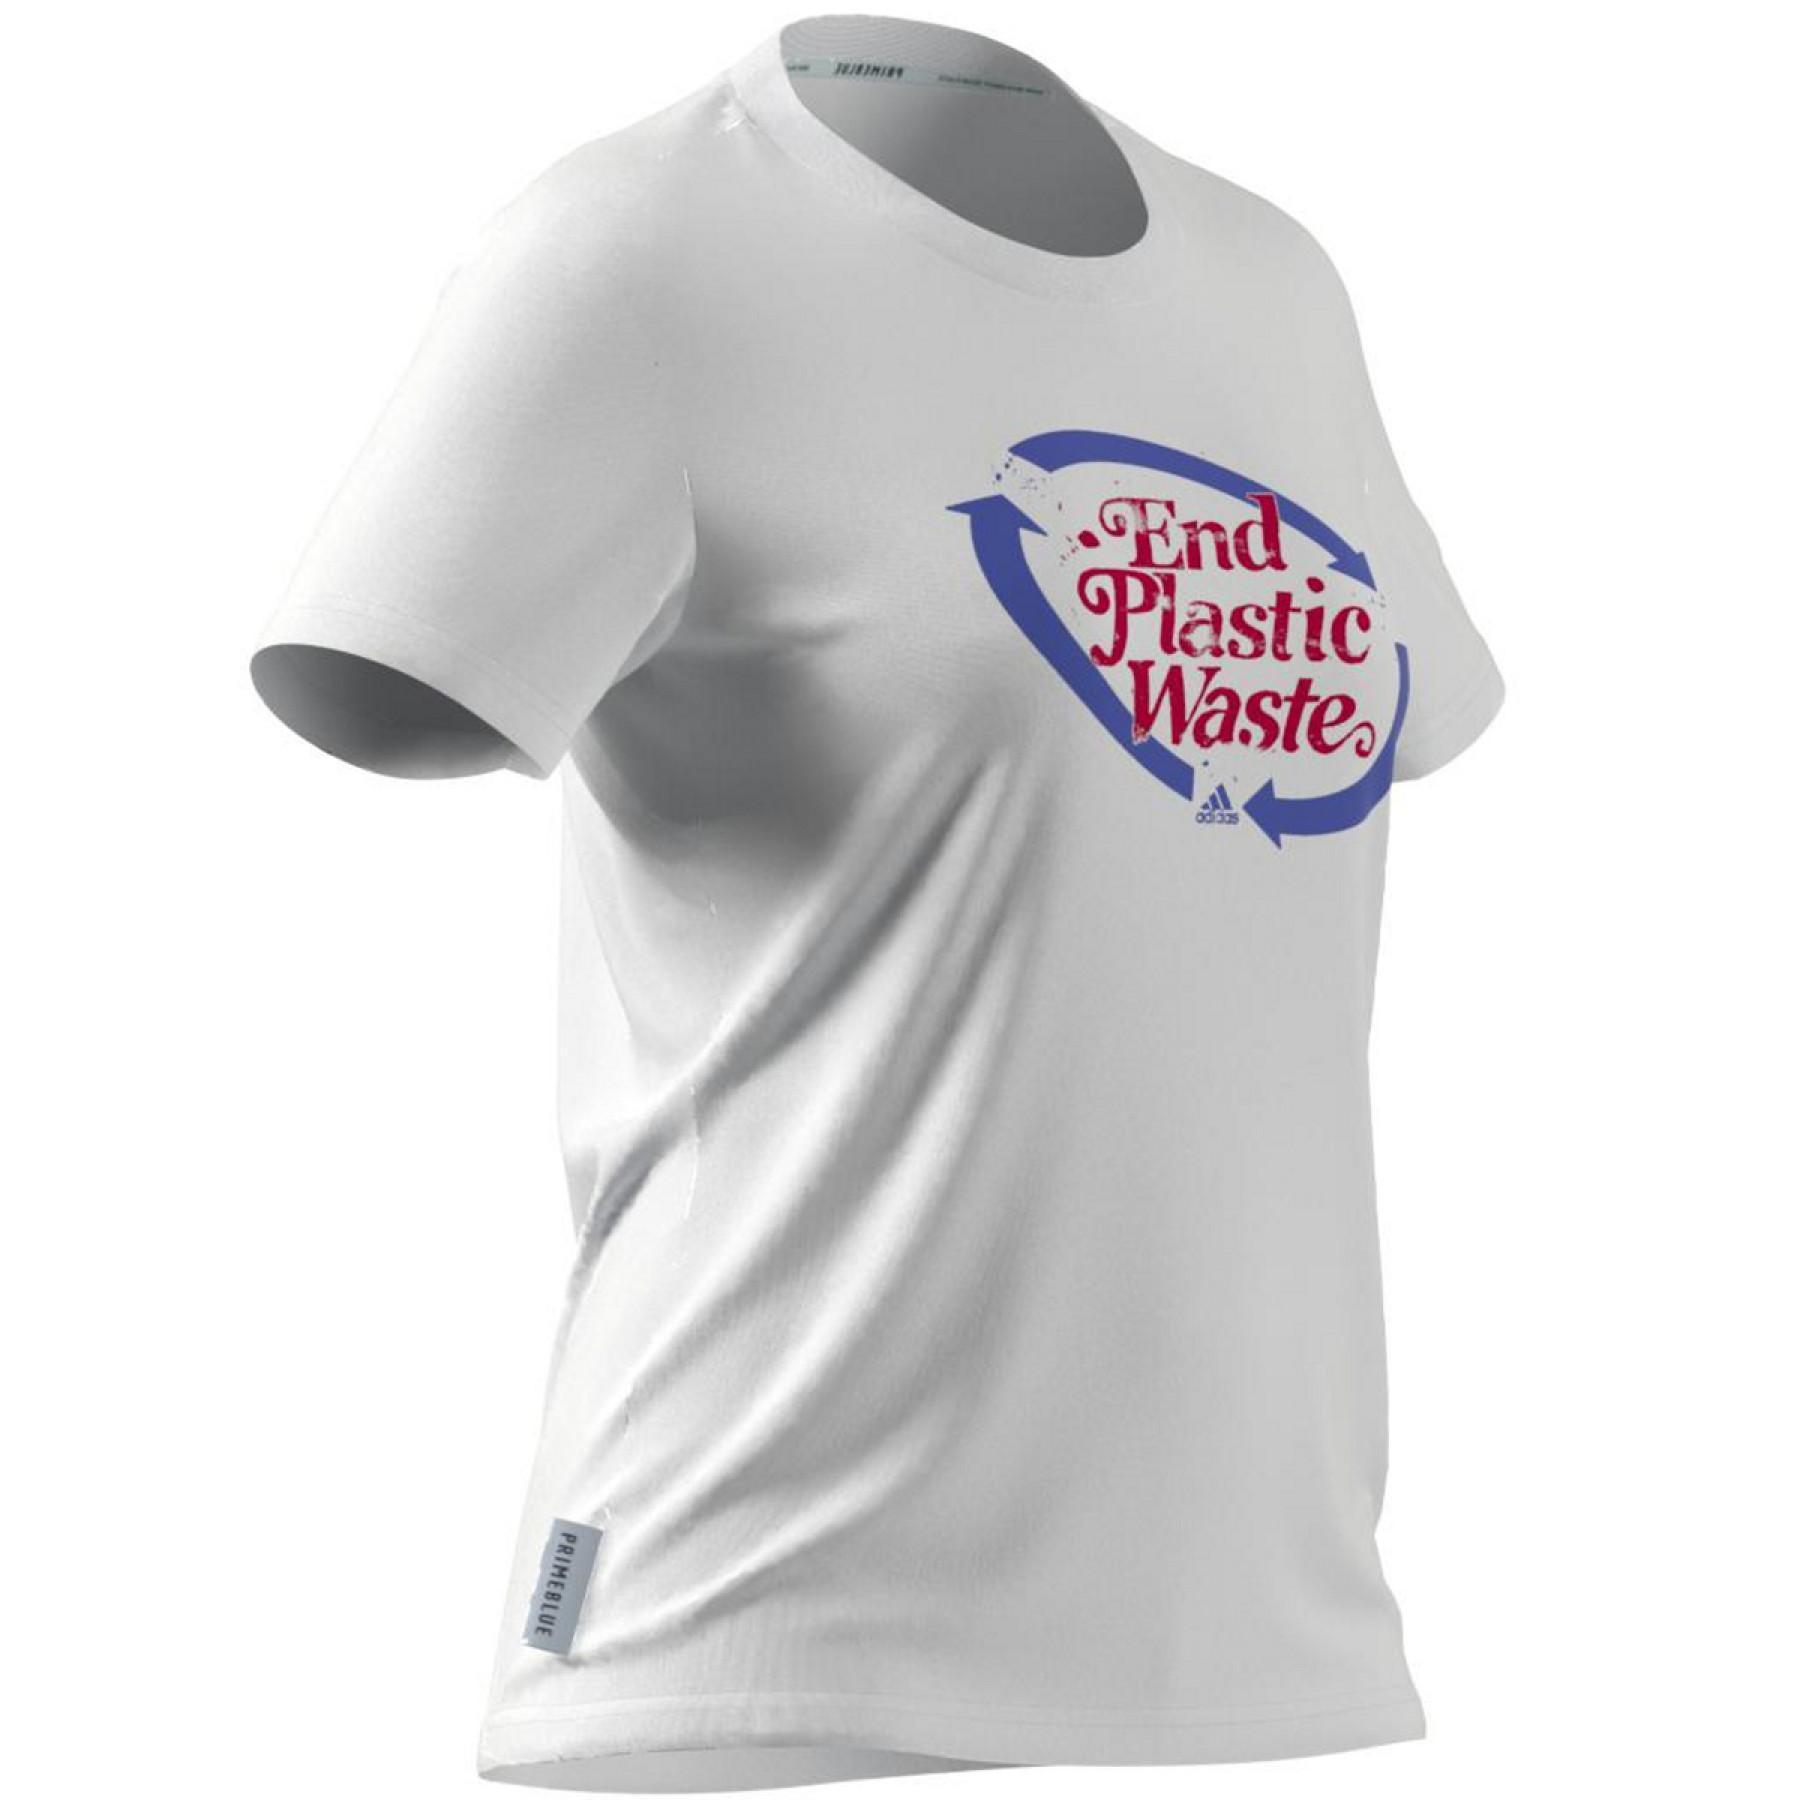 Camiseta feminina adidas Slogan Graphic